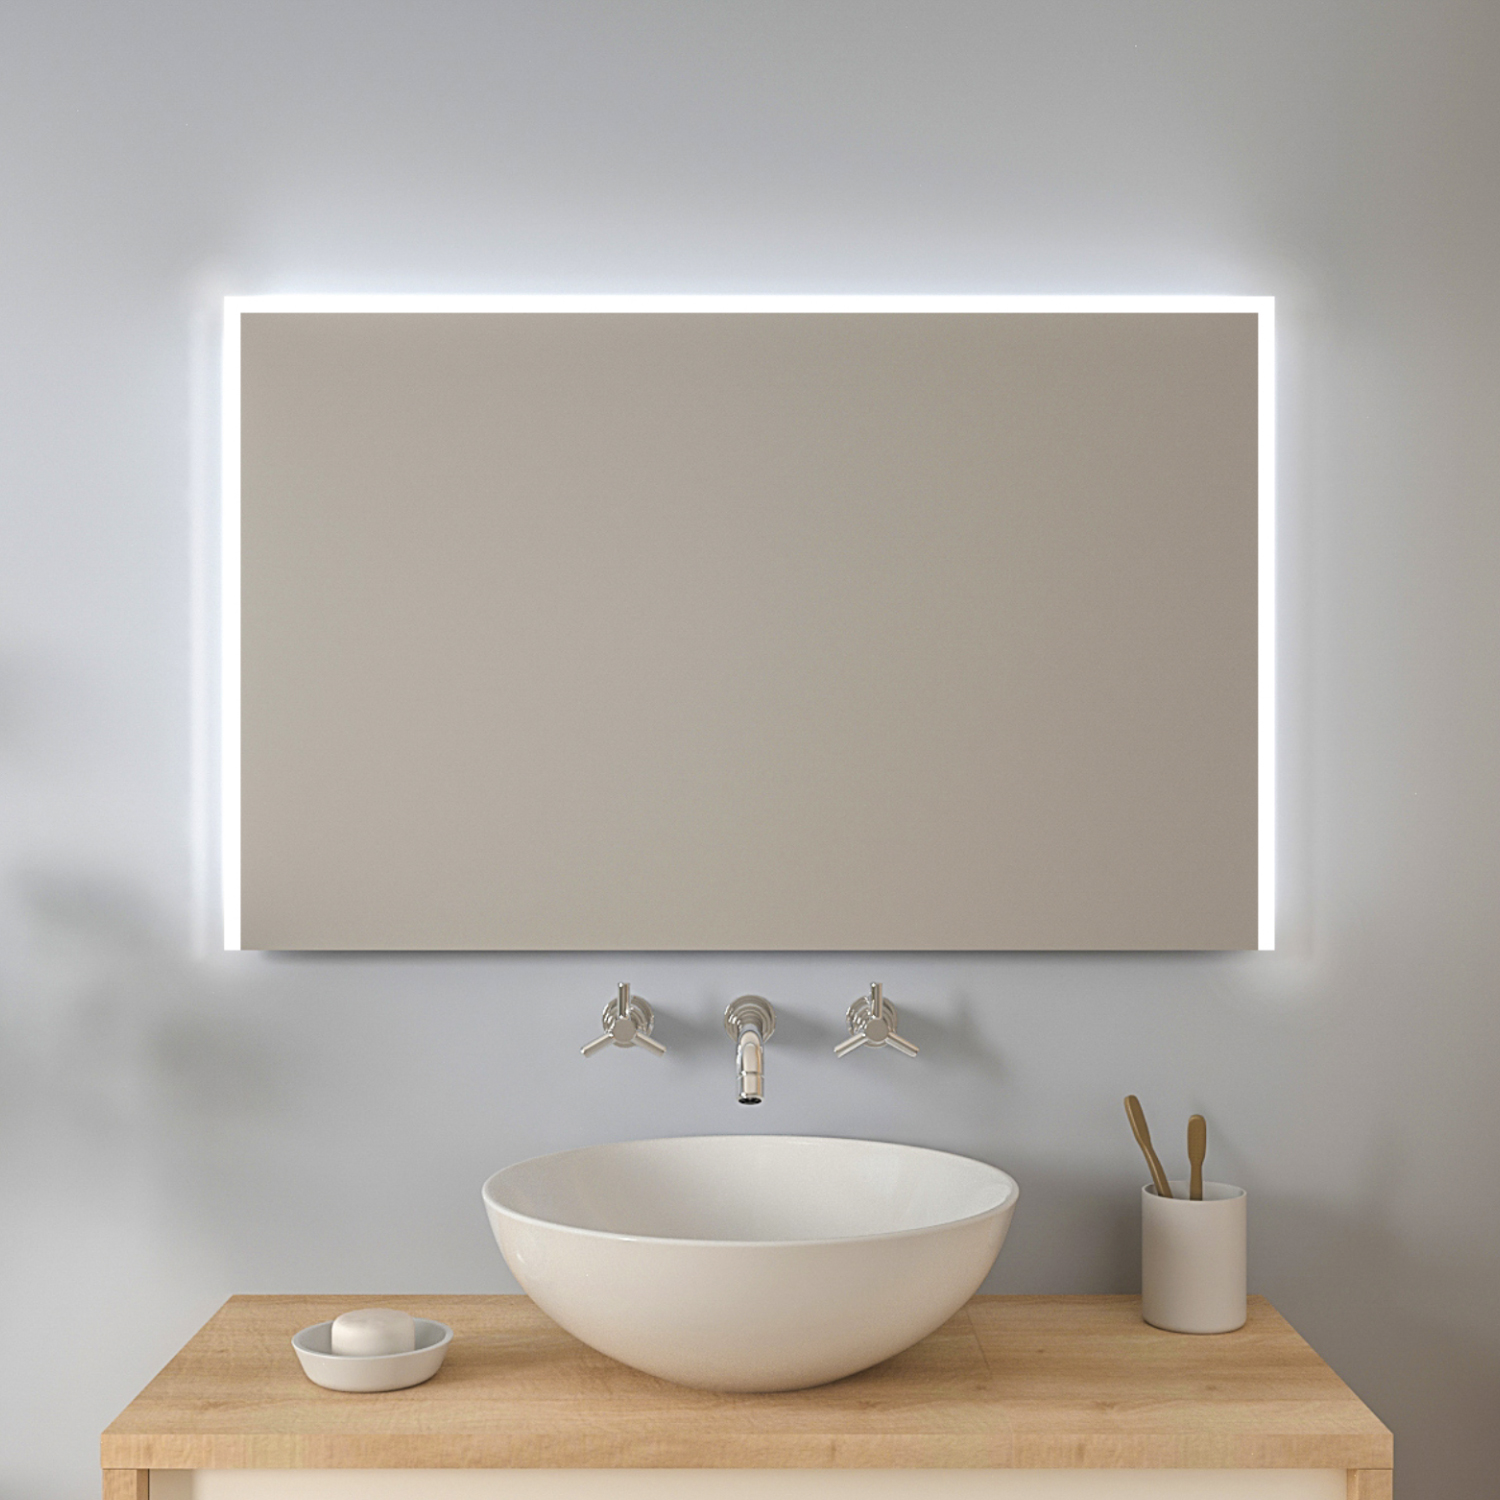 Badspiegel mit LED Beleuchtung Badezimmerspiegel Bad Spiegel Wandspiegel M110 